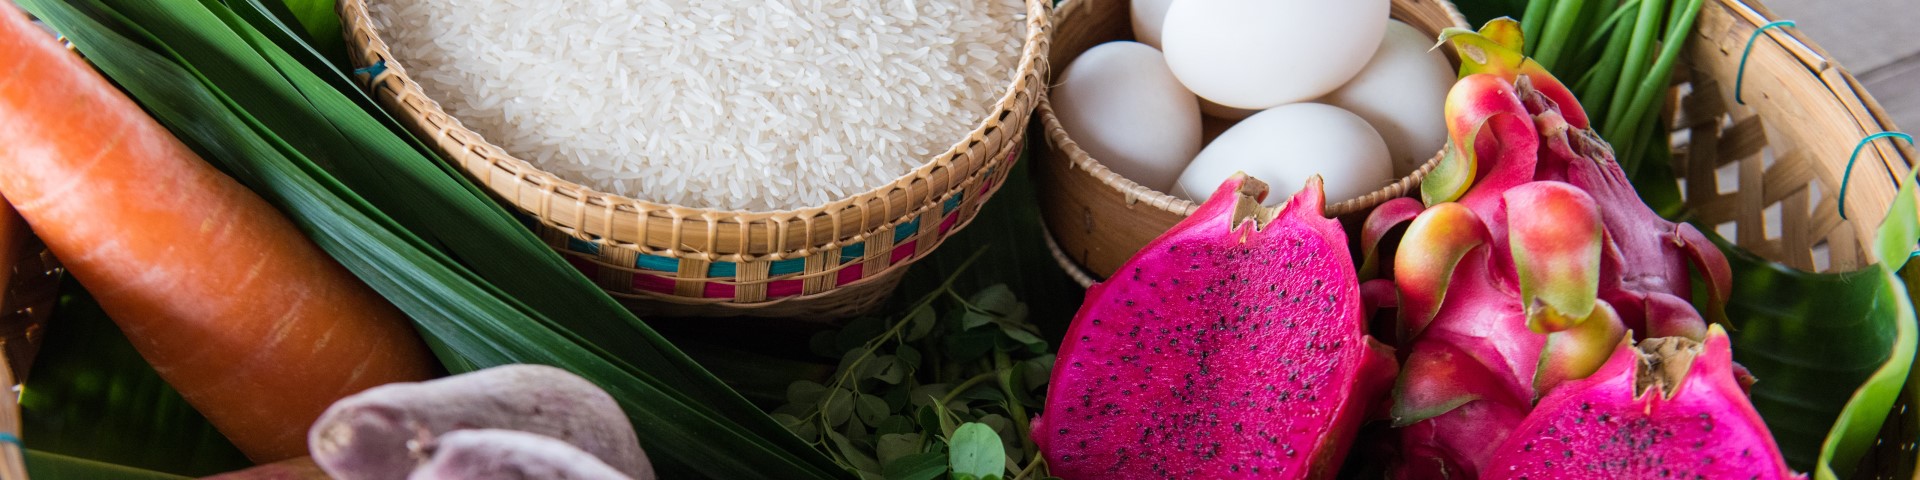 Photo d’un panier contenant des aliments, comme du riz, des œufs et des fruits du dragon.